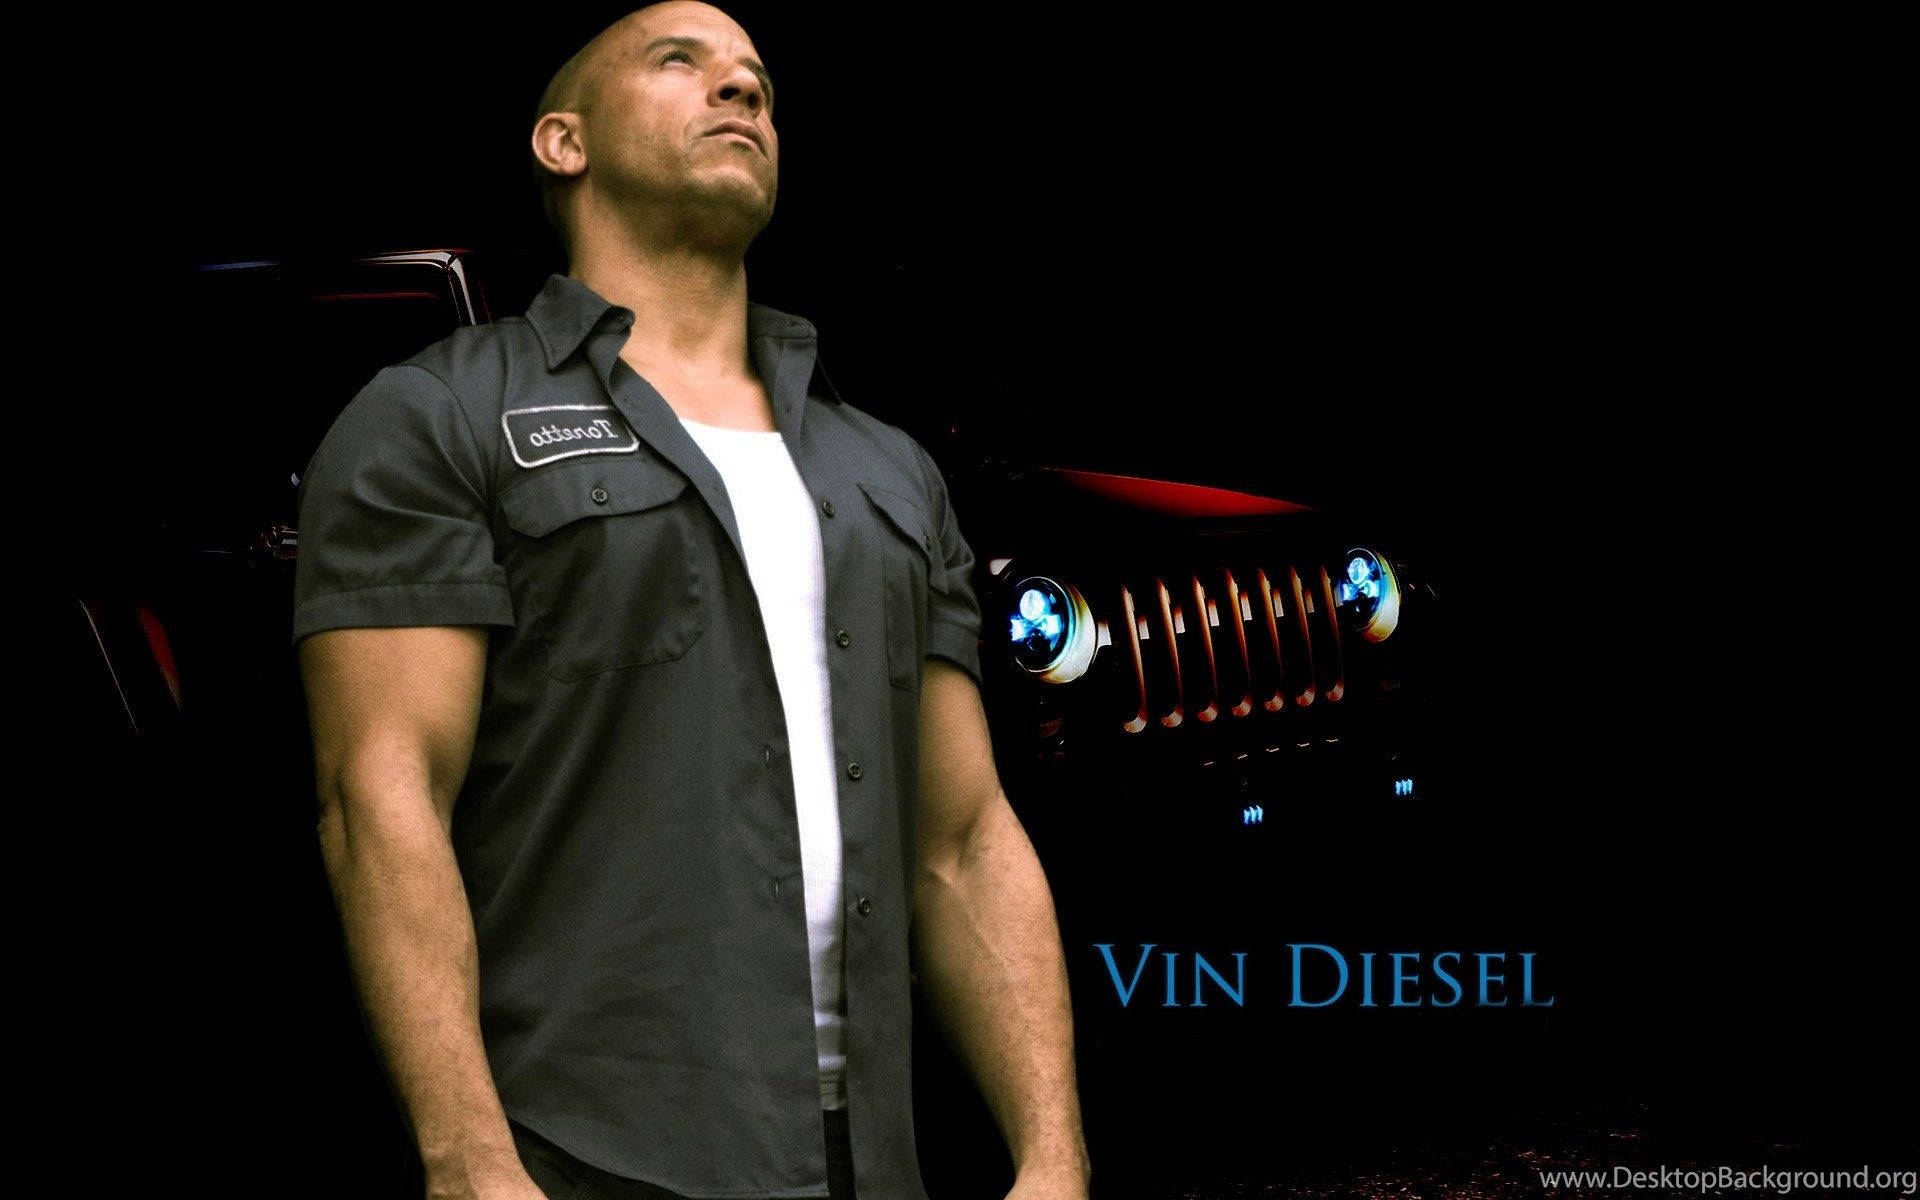 Vin Diesel Looking Up